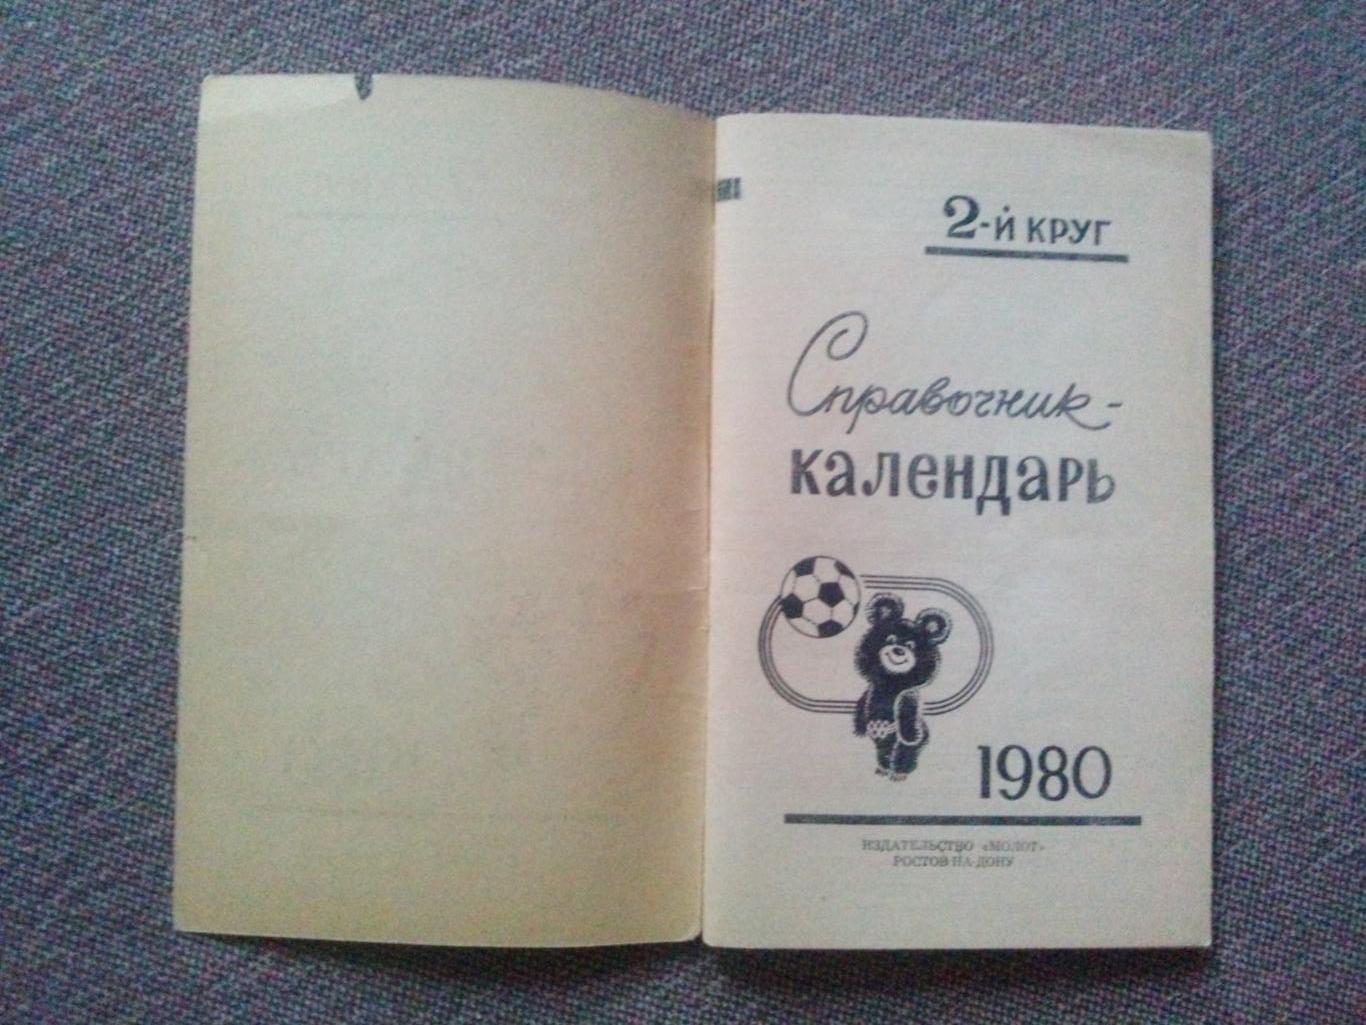 Футбол Календарь - справочник Ростов на Дону 1980 г. ( 2 - й круг ) Спорт 3